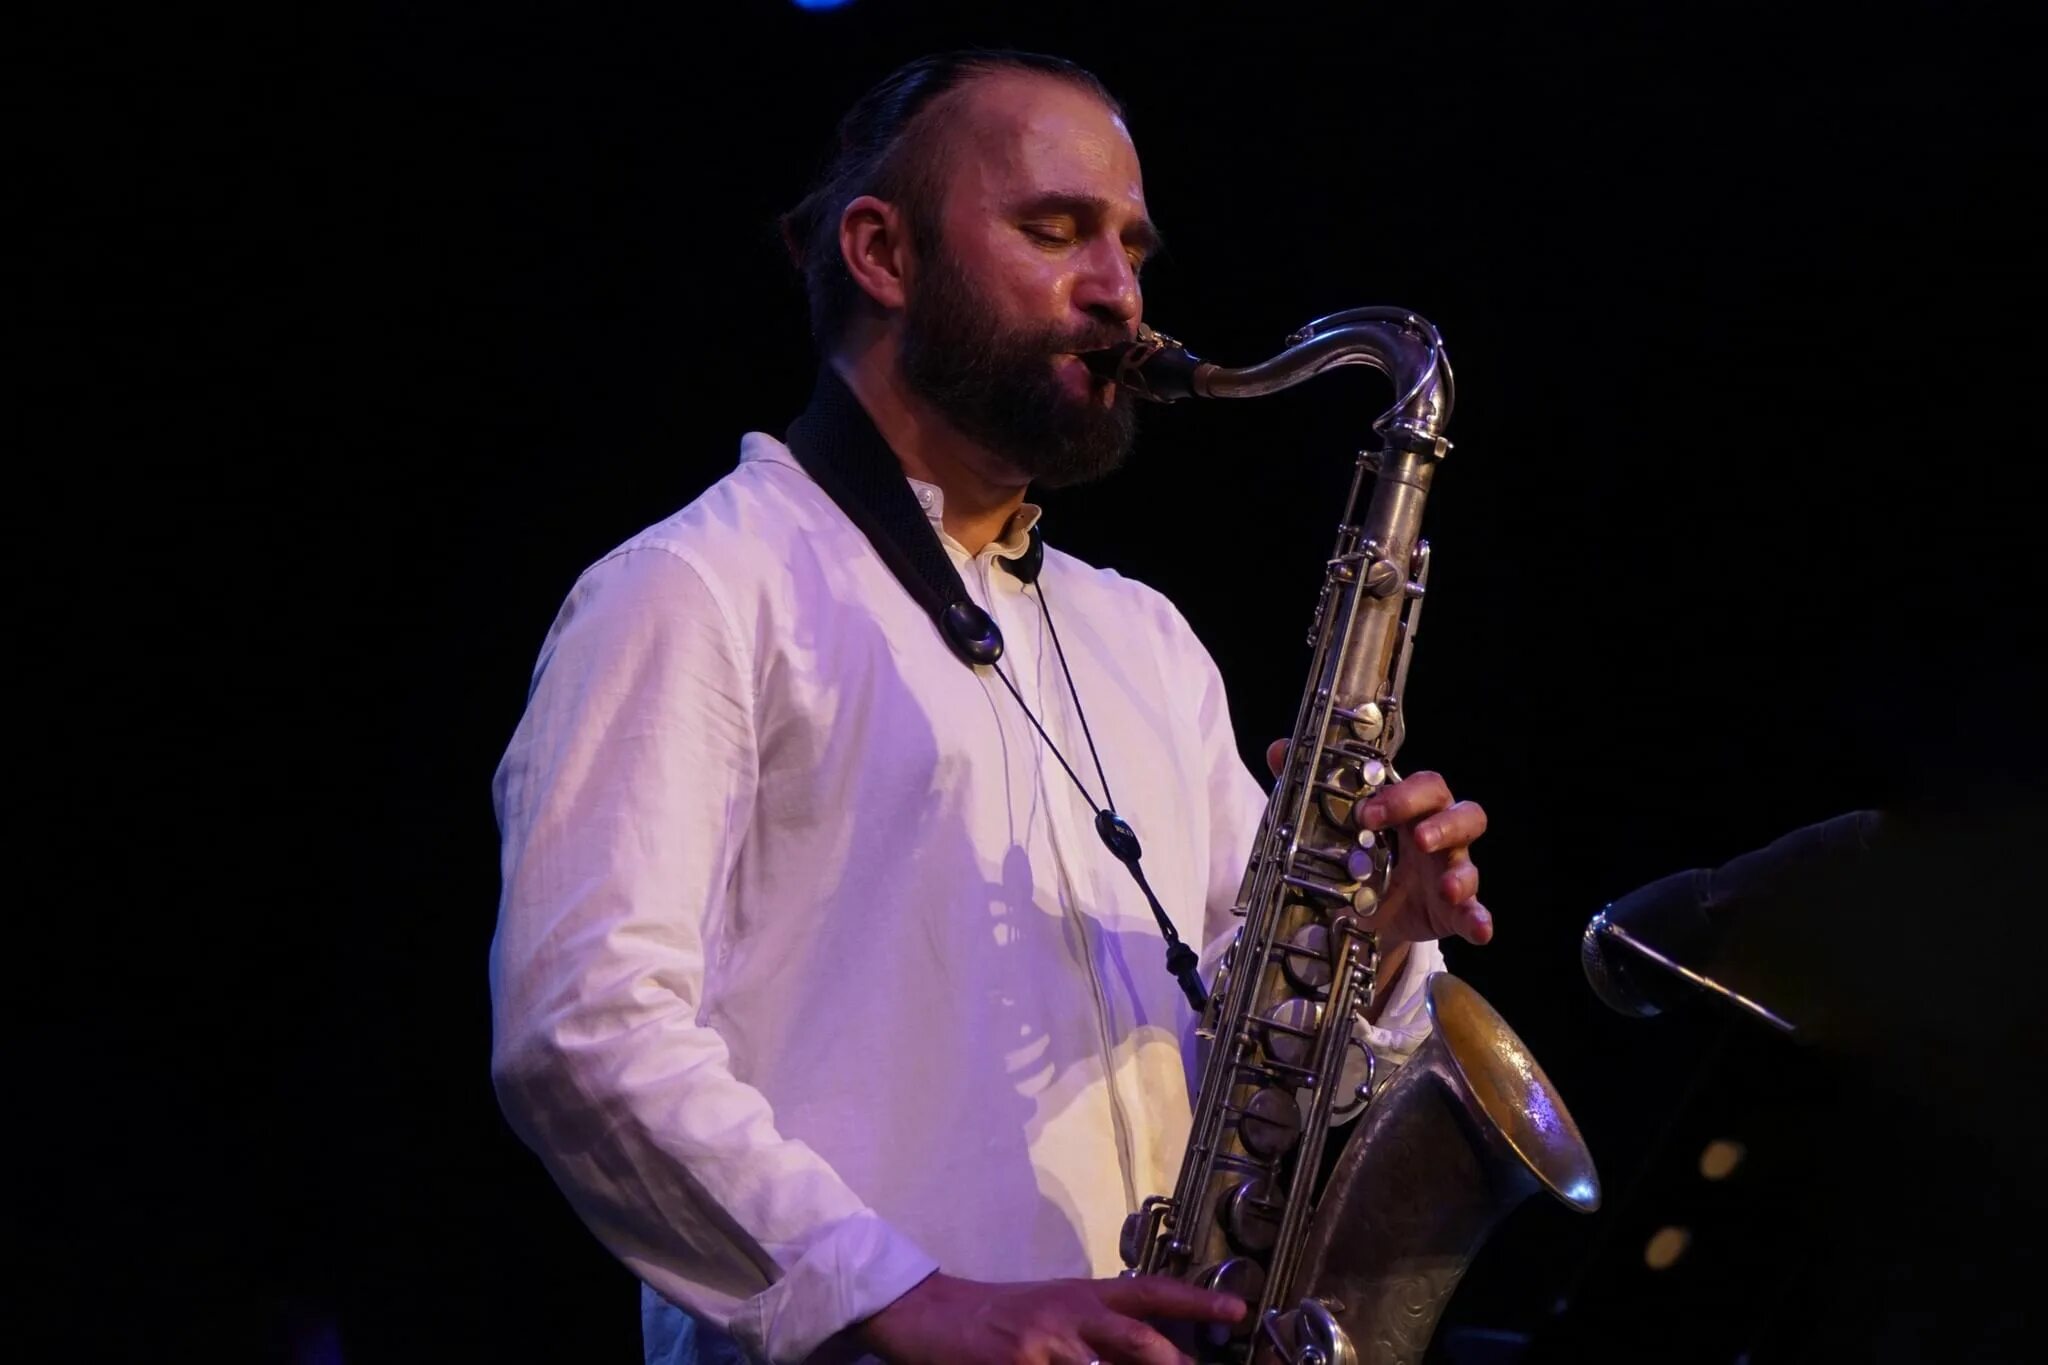 10 саксофон. Сакс 2022. Фото Тимура Некрасова саксофон. Фото Тимура Некрасова музыканта с саксофоном.